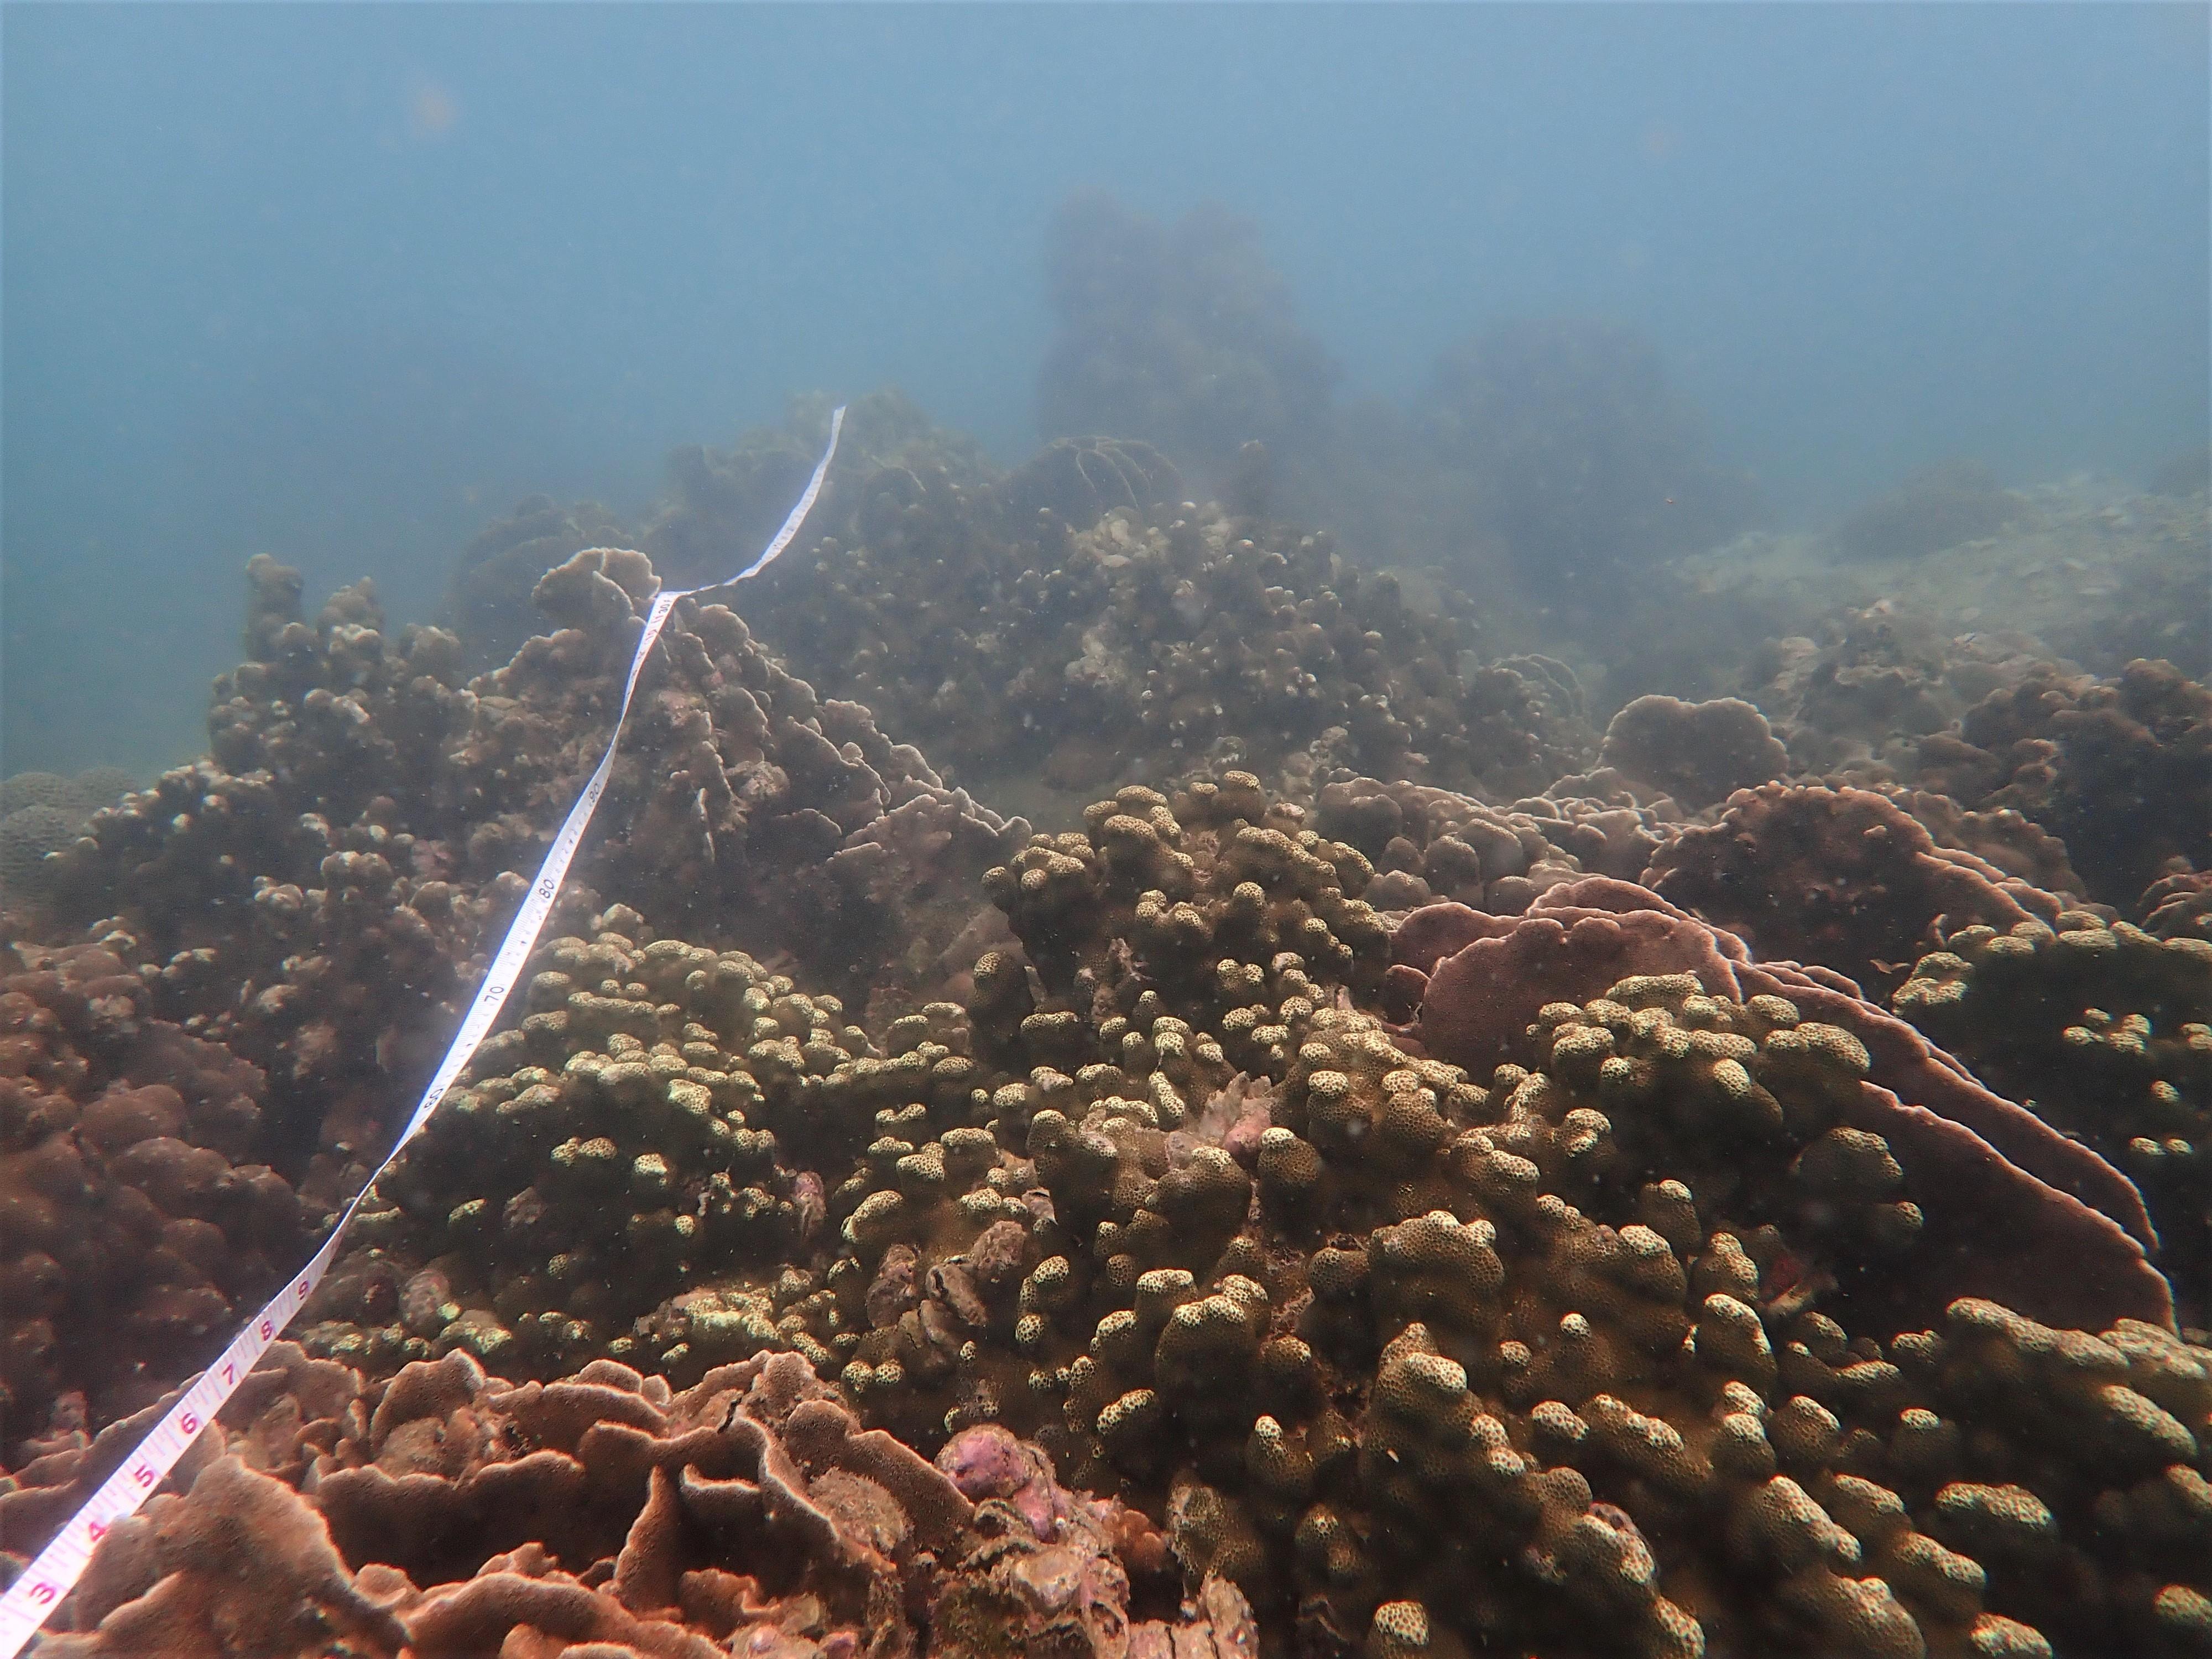 攝於橋咀洲的珊瑚群落及普查隊伍使用的樣線。